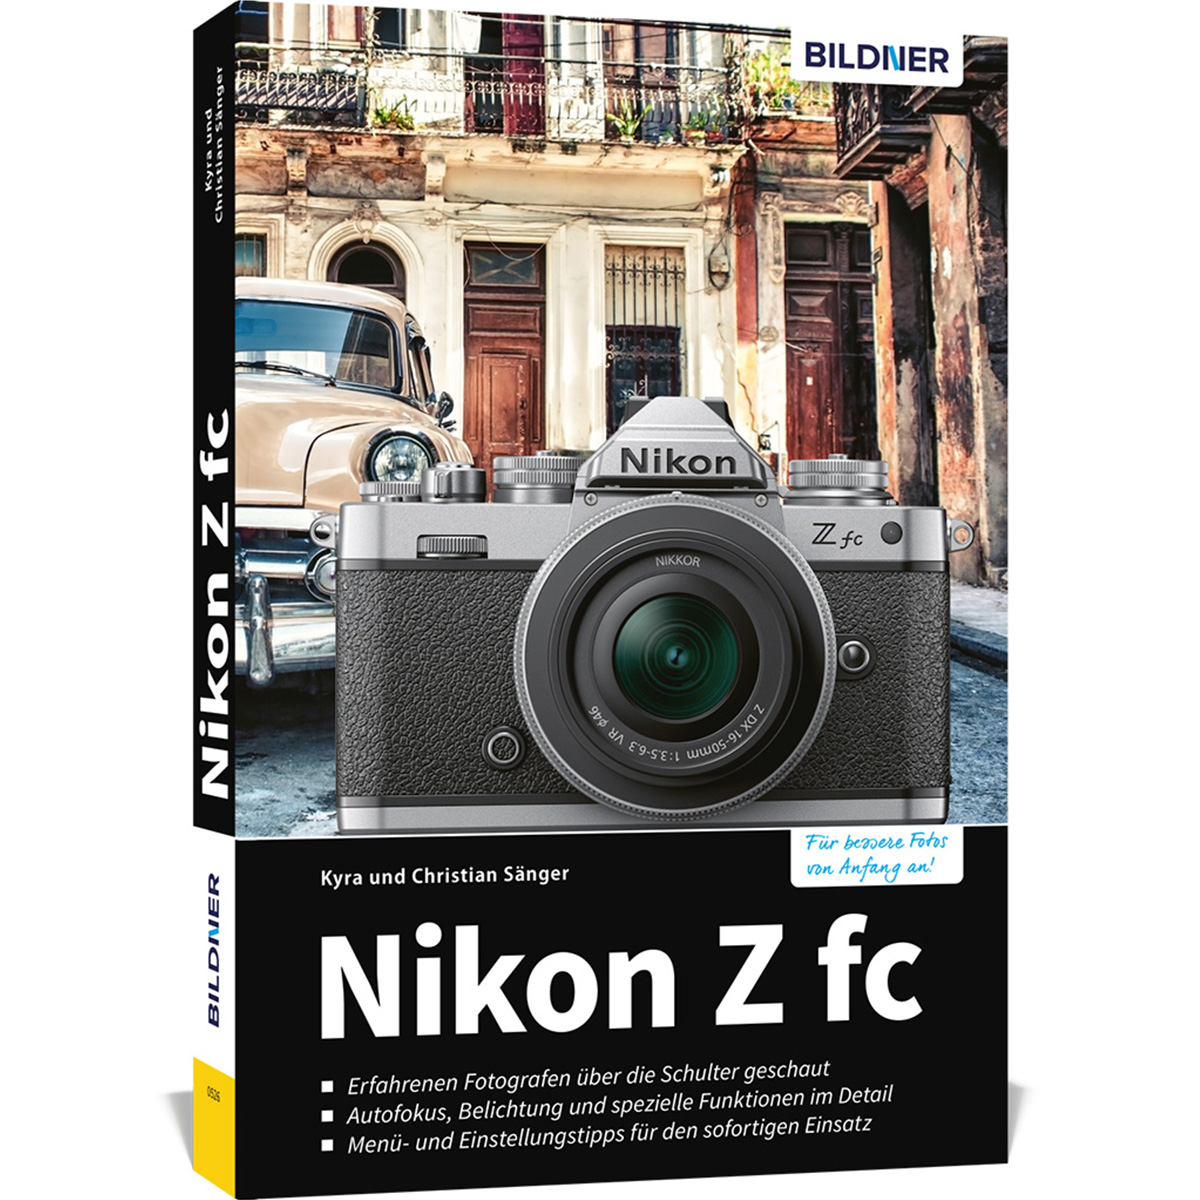 Nikon Z fc - Das Kamera zu umfangreiche Praxisbuch Ihrer